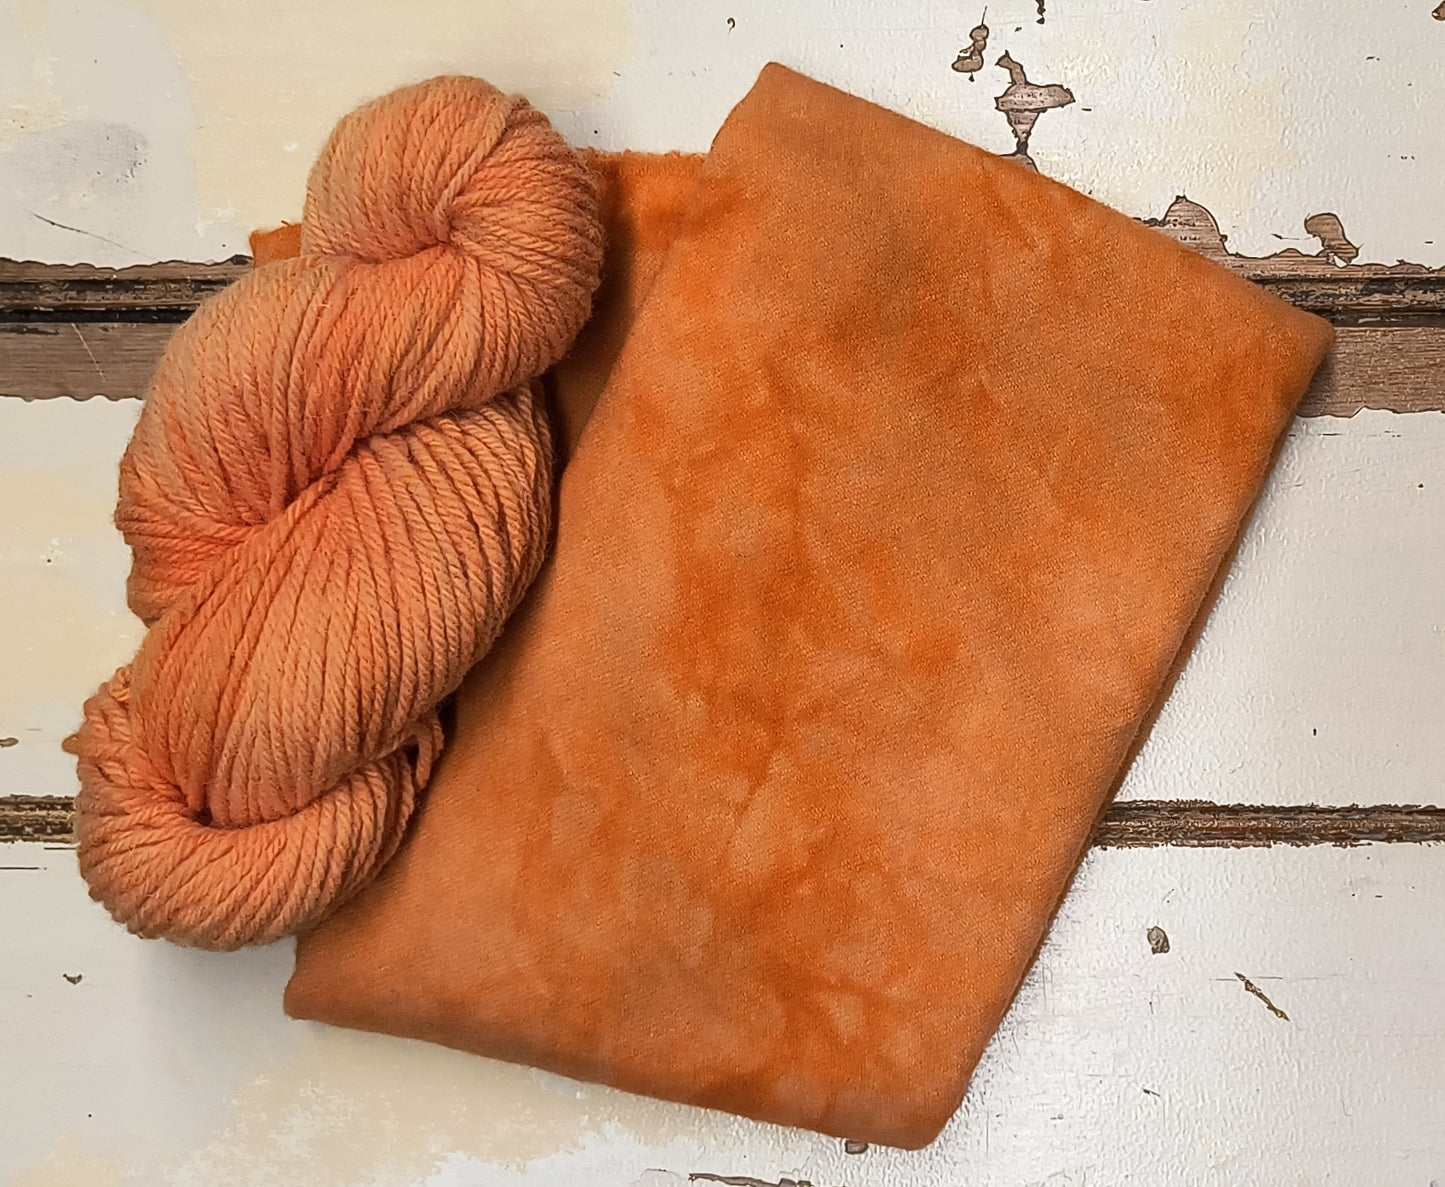 Spiced Pumpkin Hand Dyed Wool Yarn